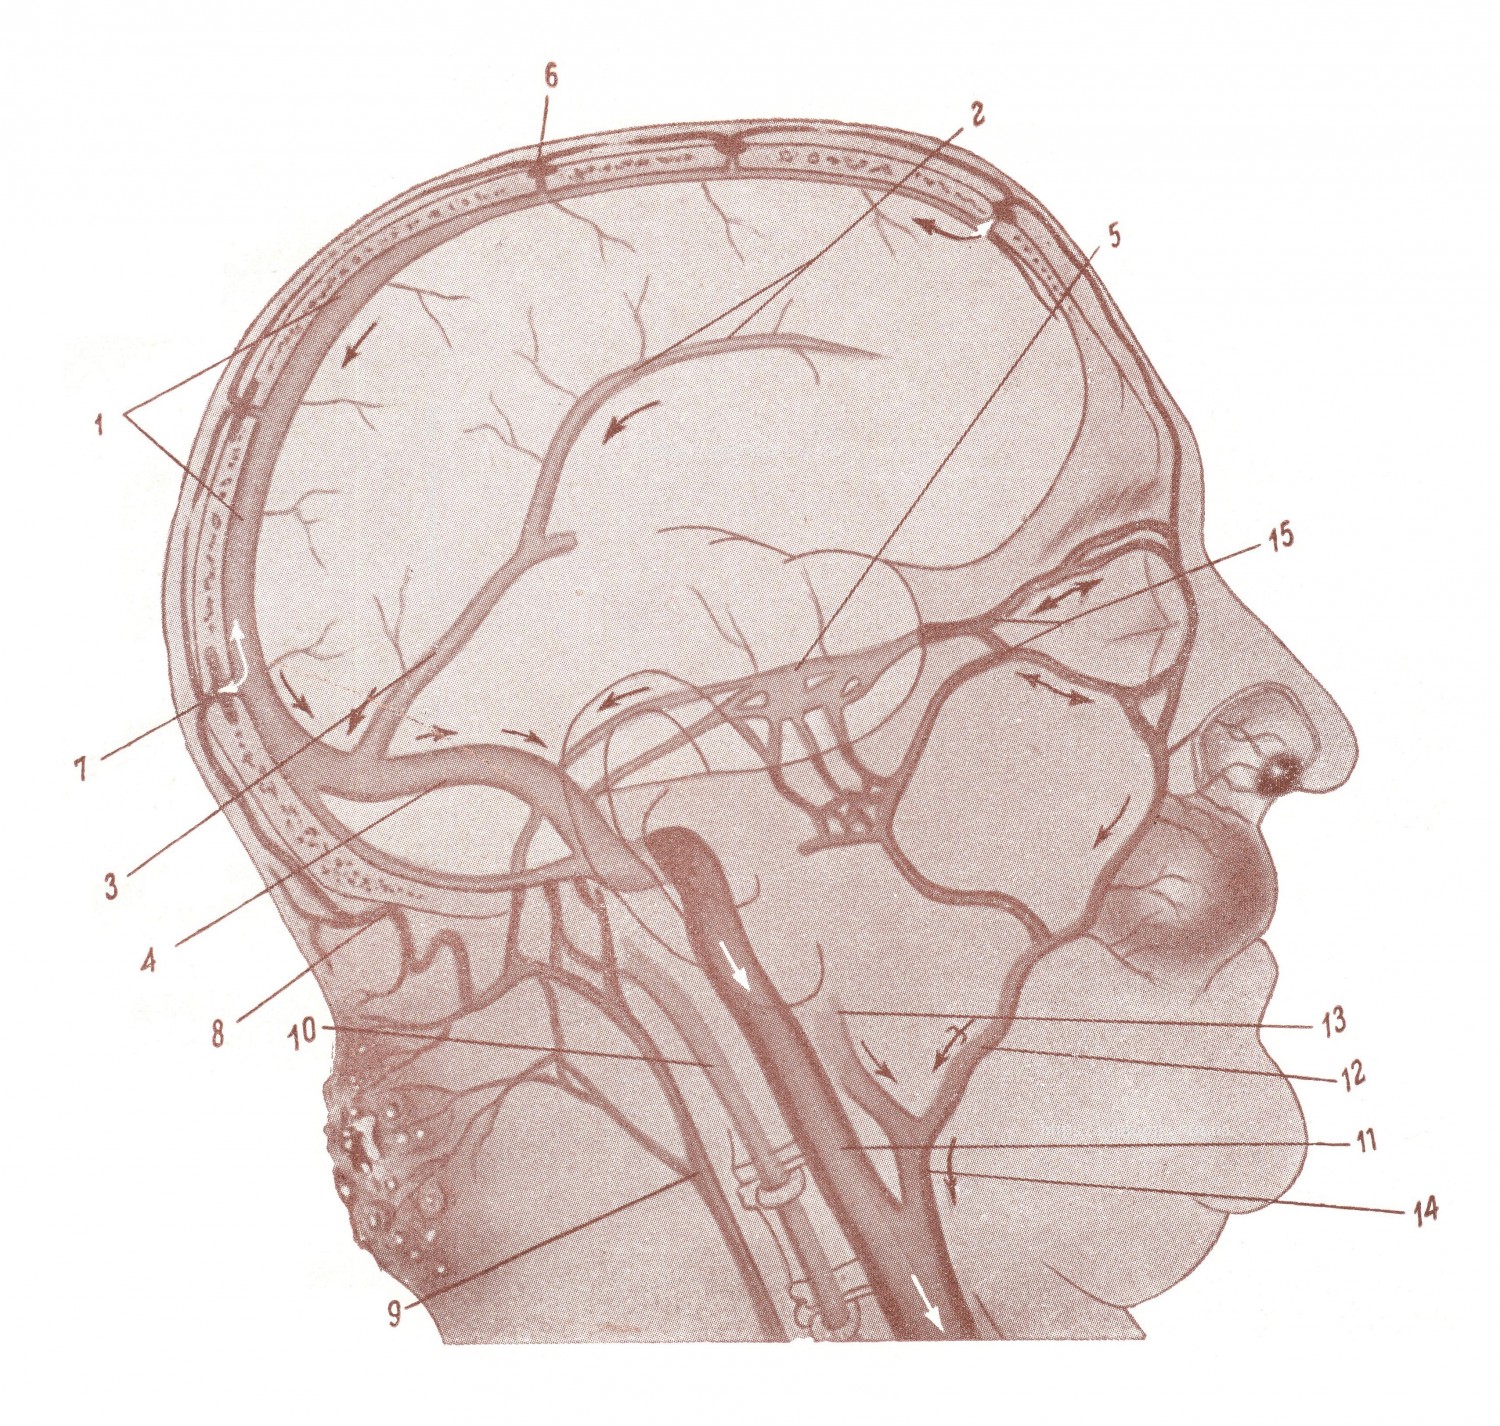 Пути проникновения инфекции в черепную полость из близлежащего фурункула или карбункула на лице или волосистой части головы.